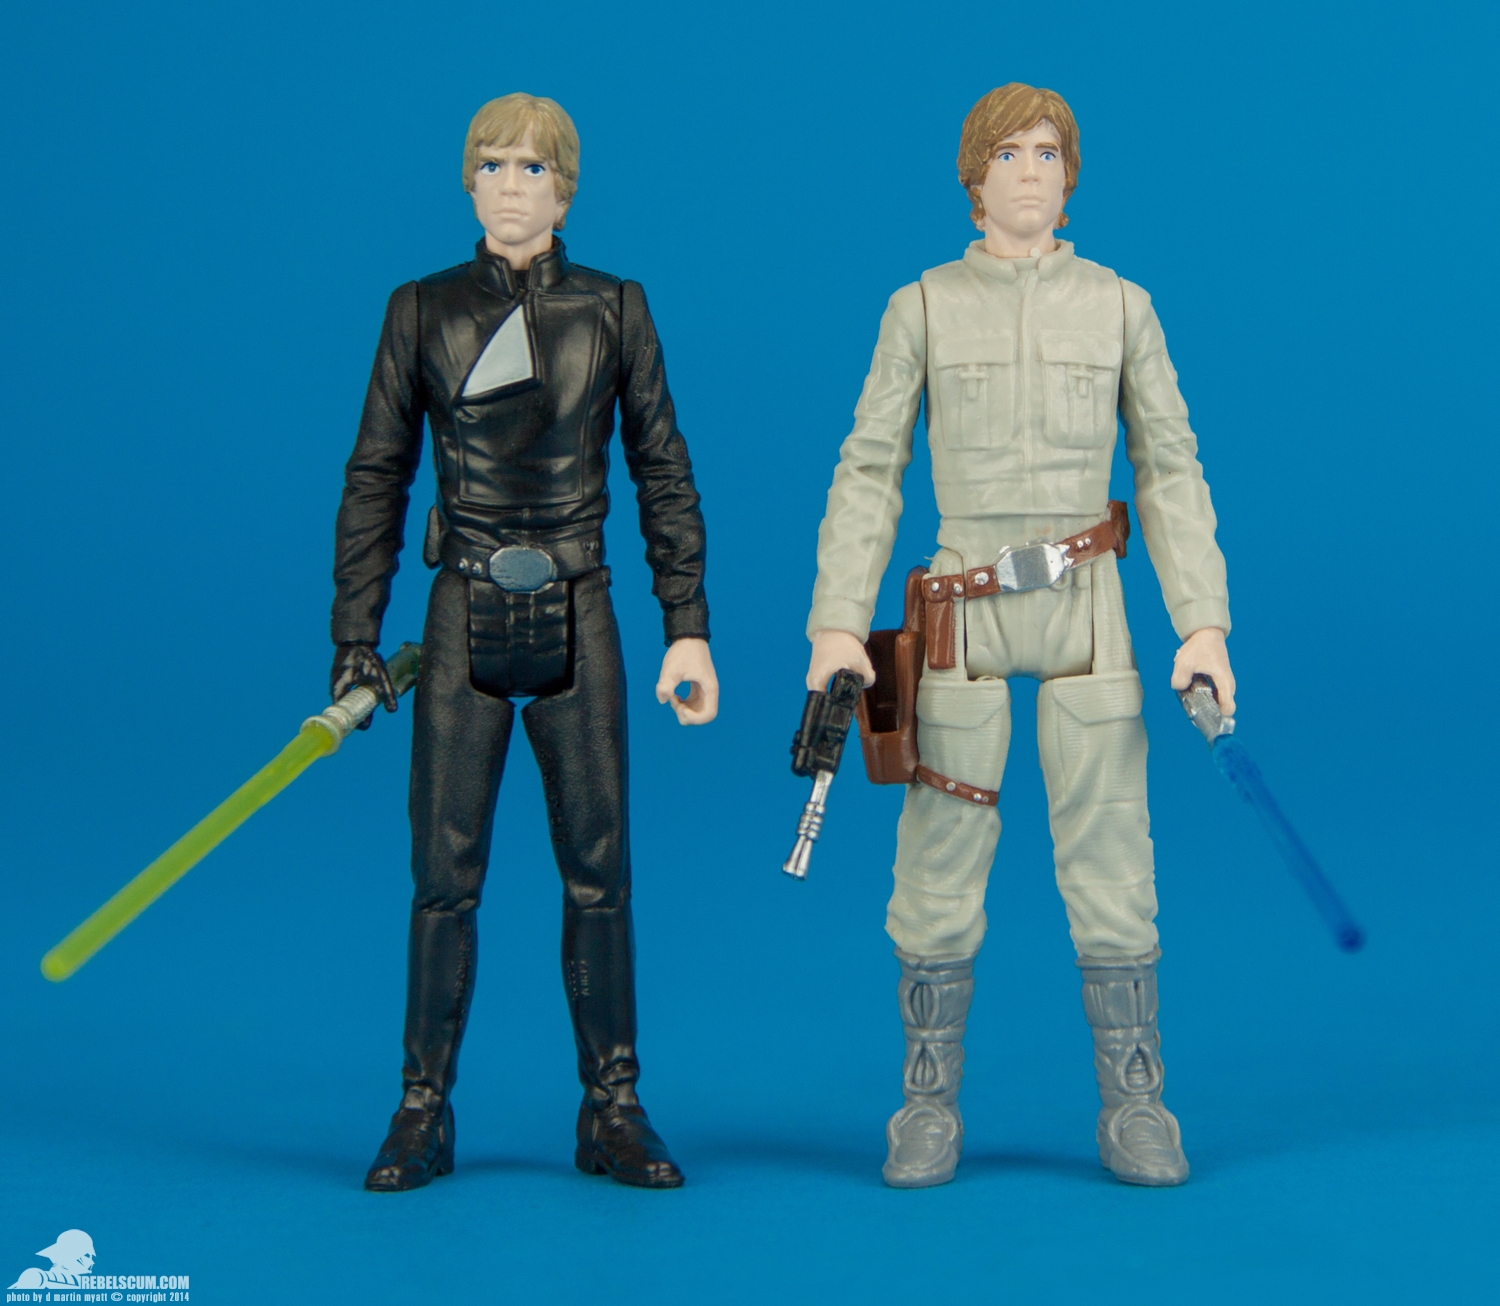 Mission-Series-Luke-Vader-early-look-Star-Wars-Hasbro-011.jpg